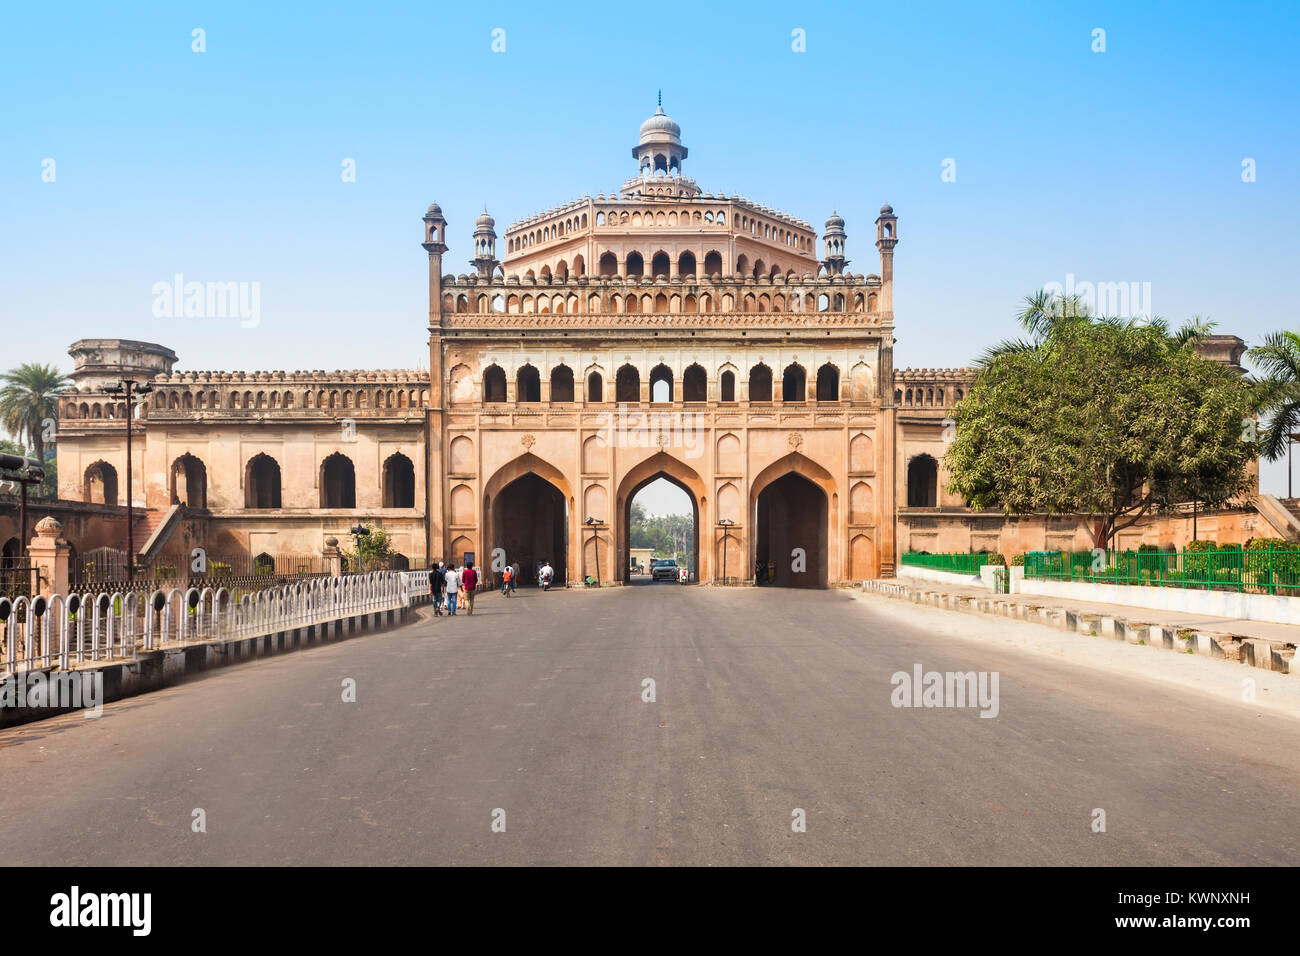 Le Rumi Darwaza (turc) porte à Lucknow, Uttar Pradesh de l'Inde est une imposante passerelle. C'est un exemple d'Awadhi architecture. Banque D'Images